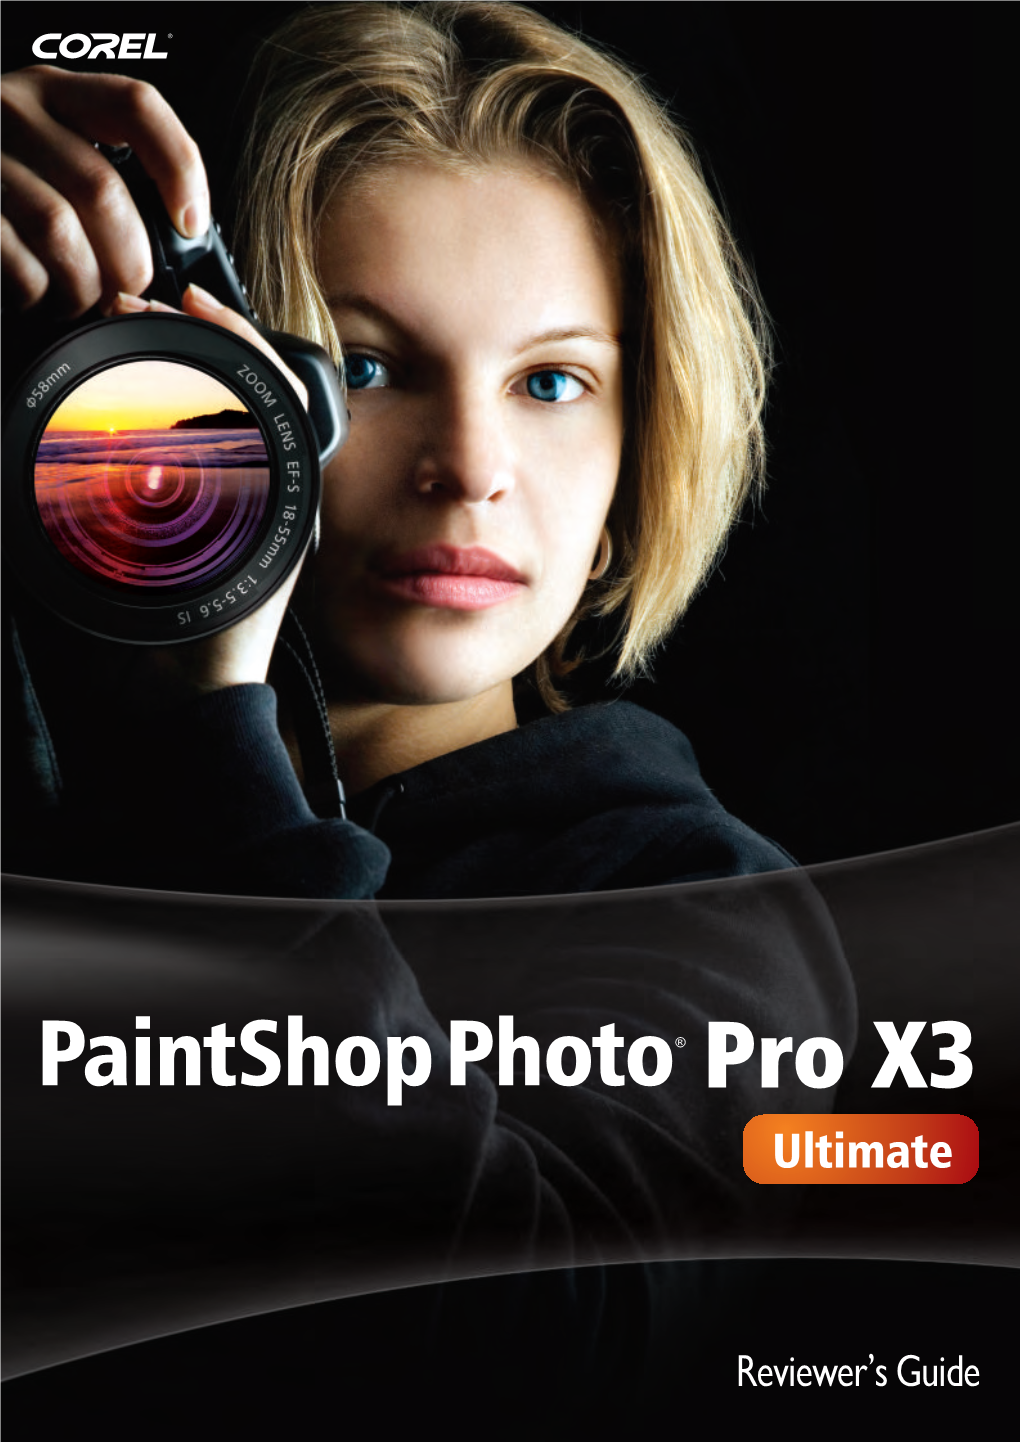 Corel Paintshop Photo Pro X3 Ultimate Reviewer's Guide